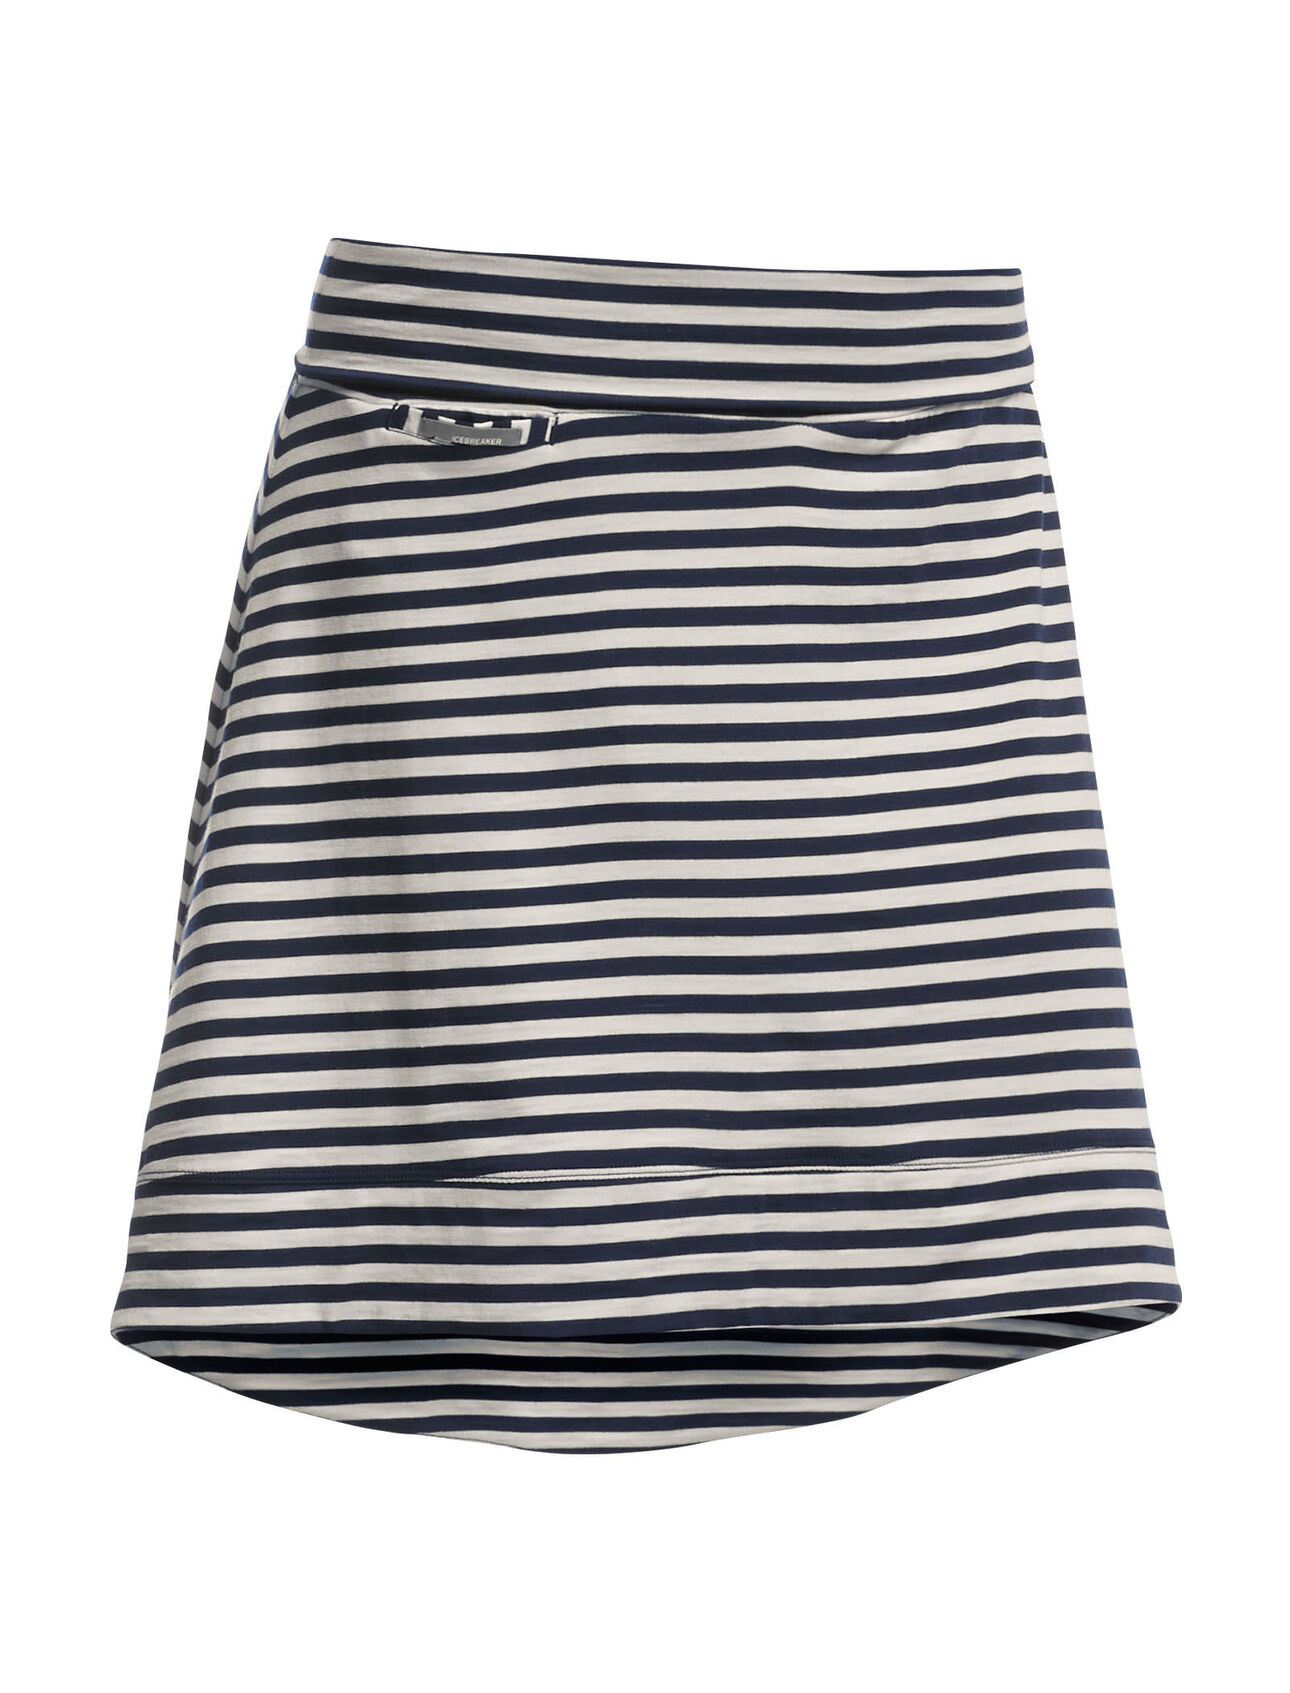 Allure Skirt Stripe